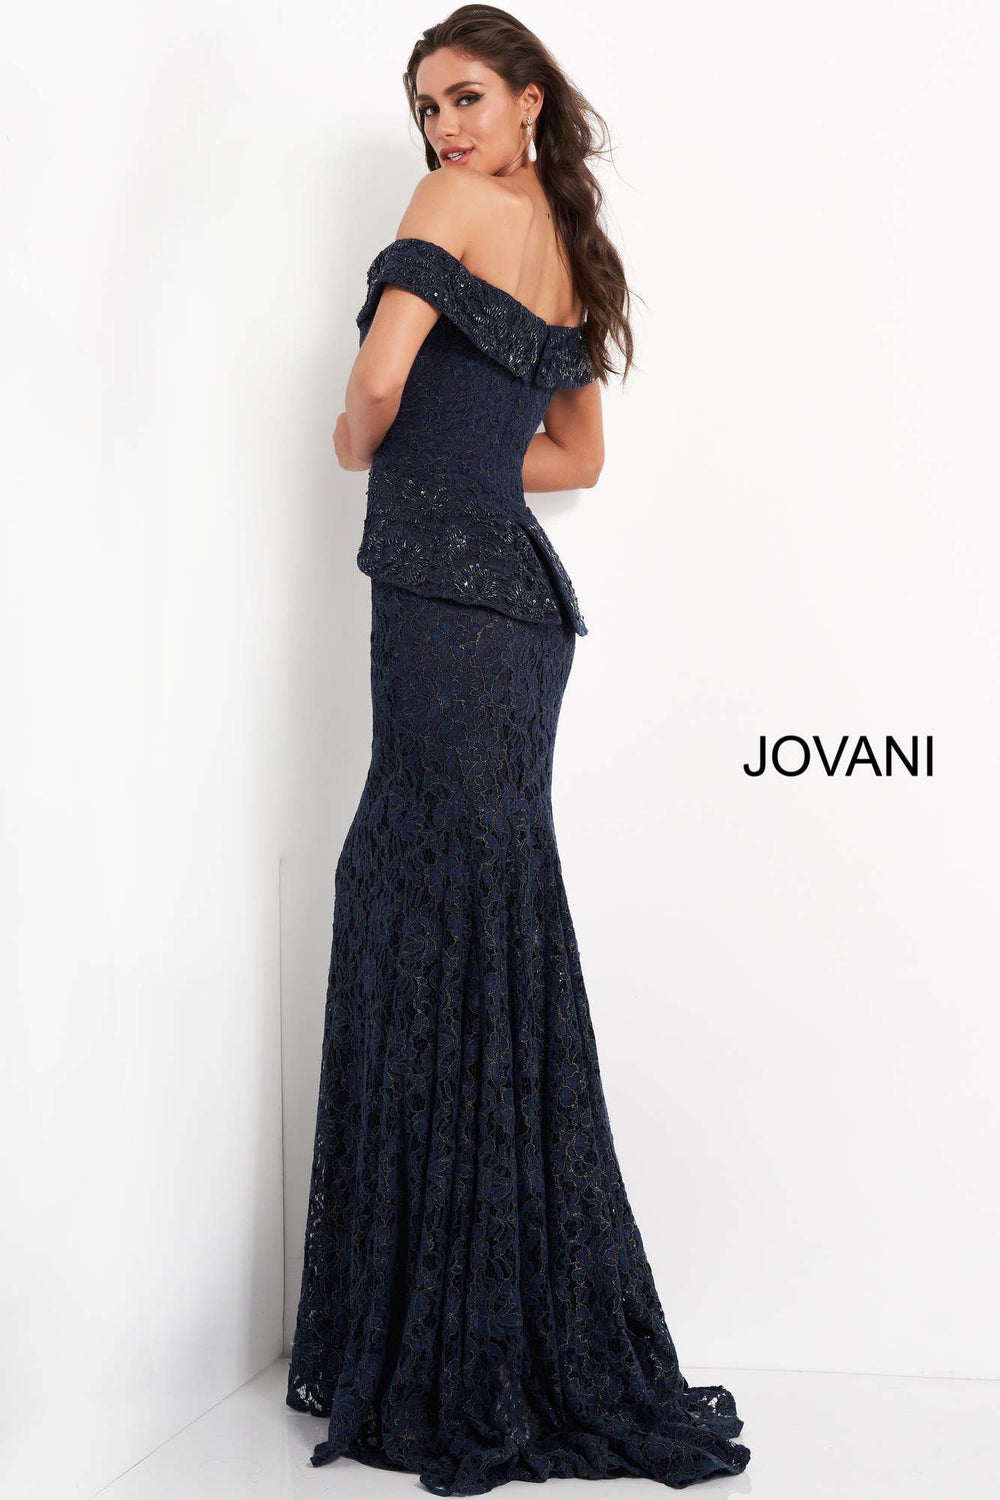 Off the Shoulder Embellished Evening Dress Jovani 05059 - Morvarieds Fashion